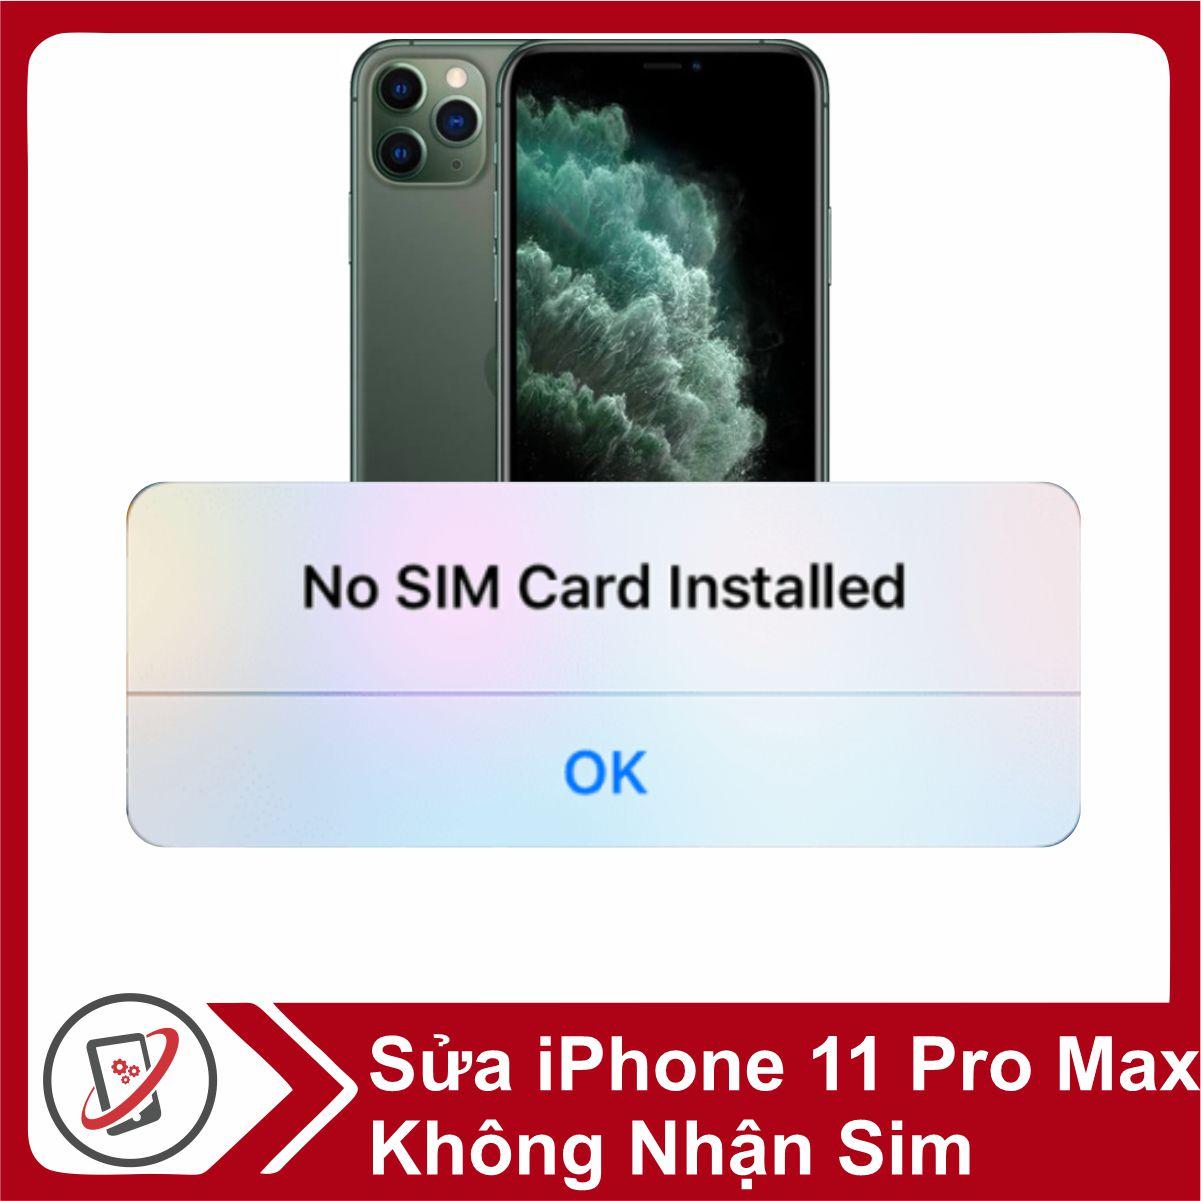 iPhone 11 Pro Max hay bị mất sóng, đâu là giải pháp